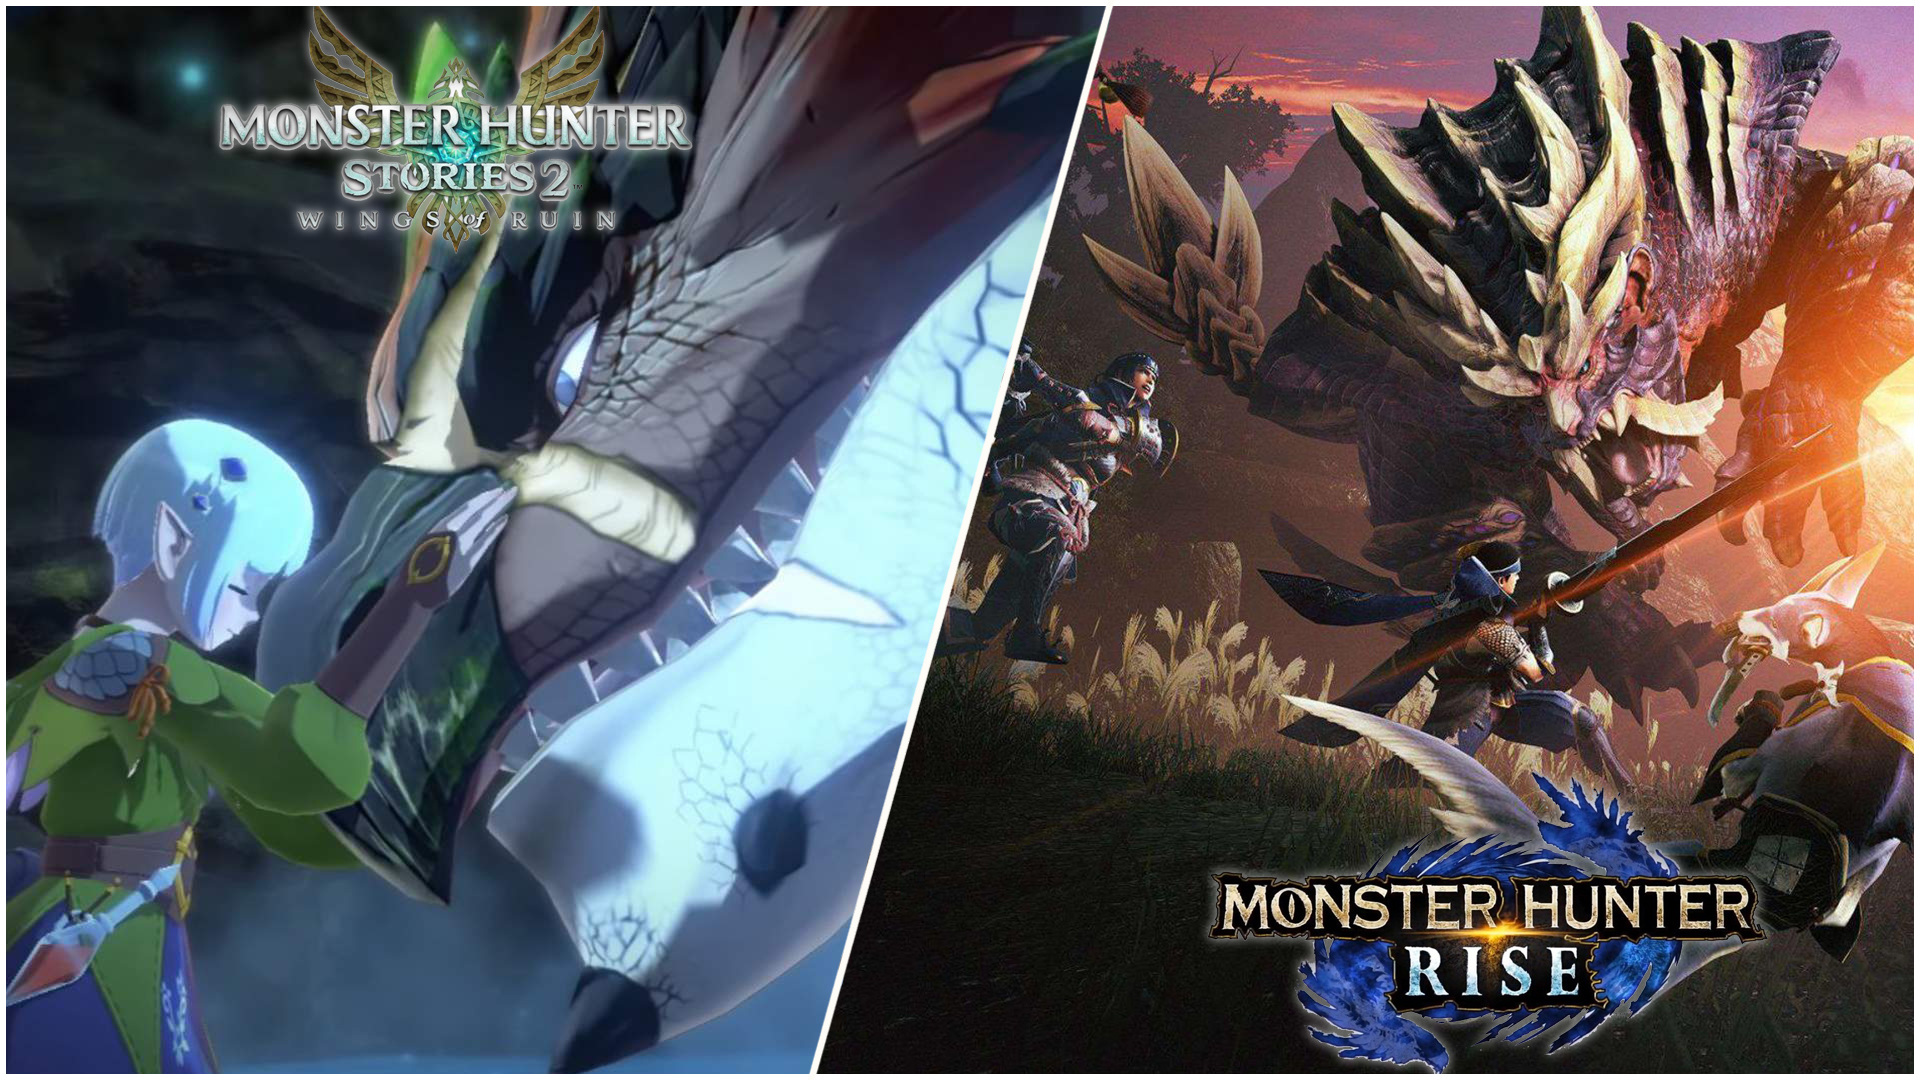 Monster-Hunter-Rise-and-Stories-Thumb.jpg